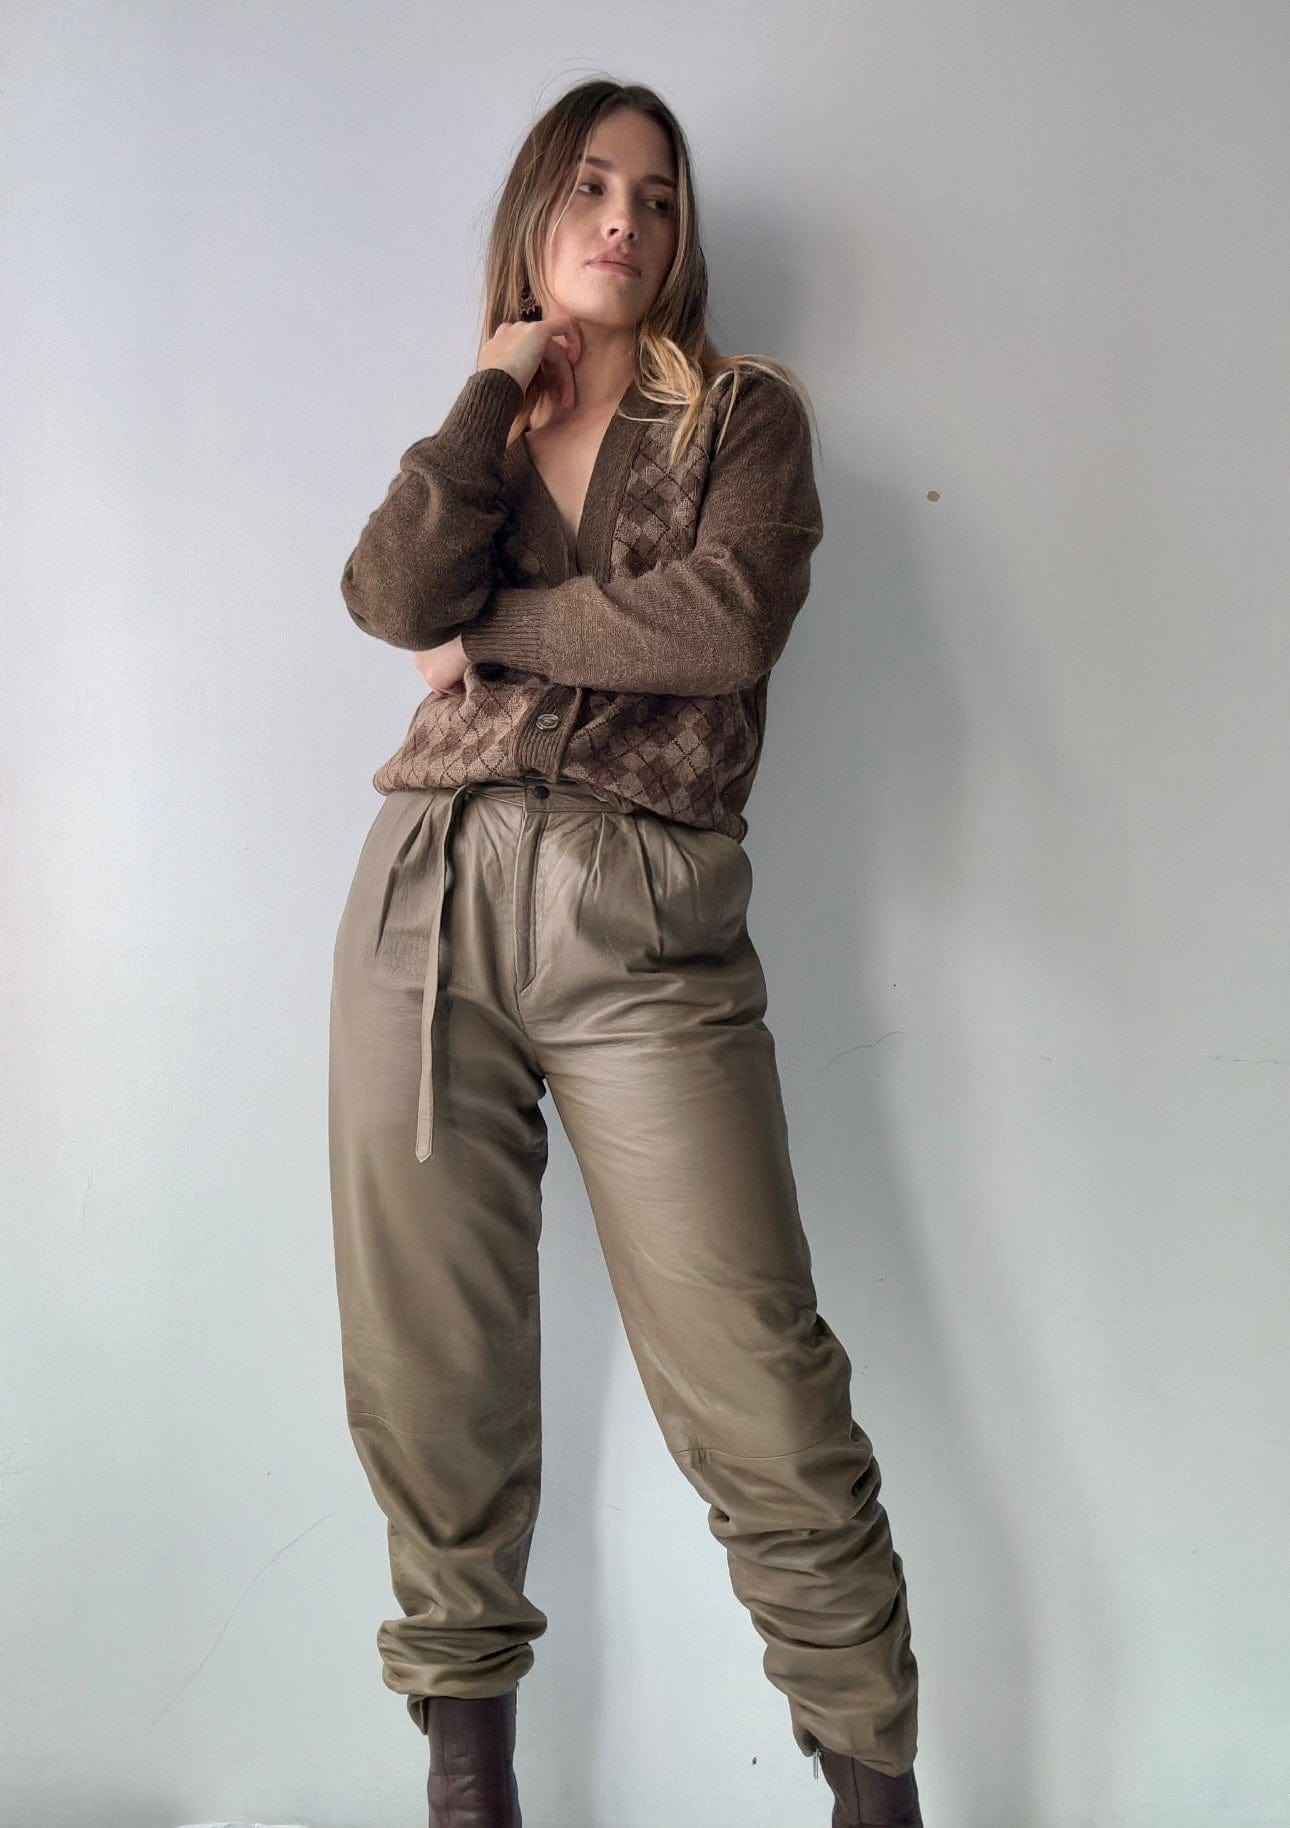 SisterGolden Pants Sato Vintage Leather Pants